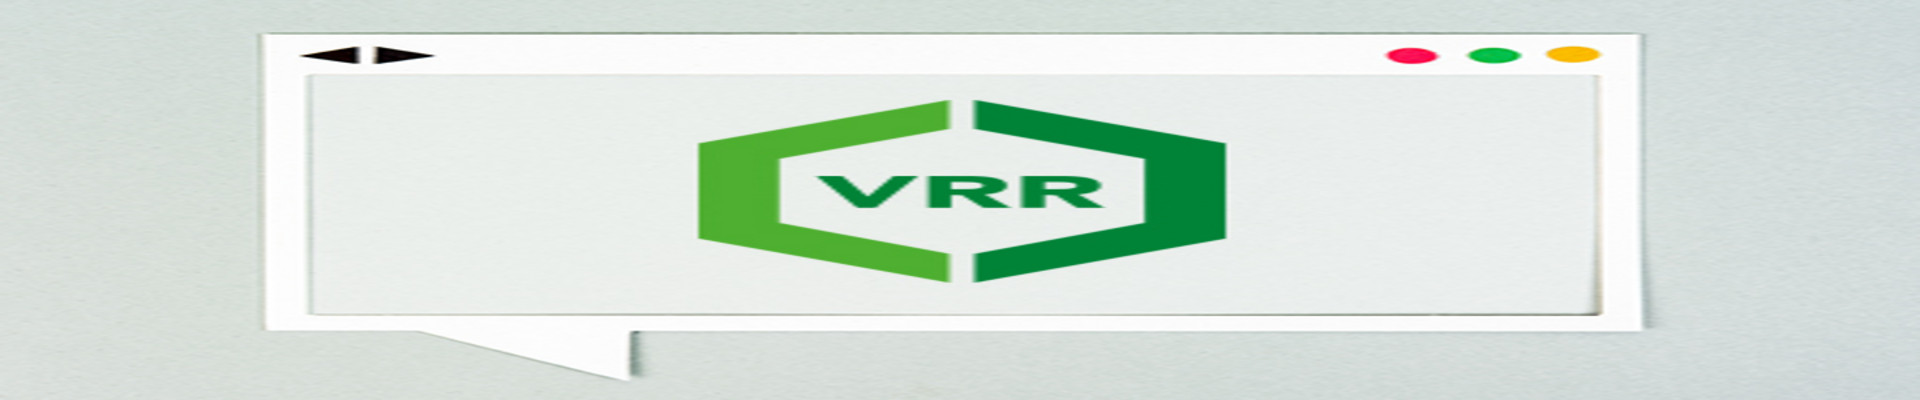 Das VRR-Logo, geöffnet im Webbrowser